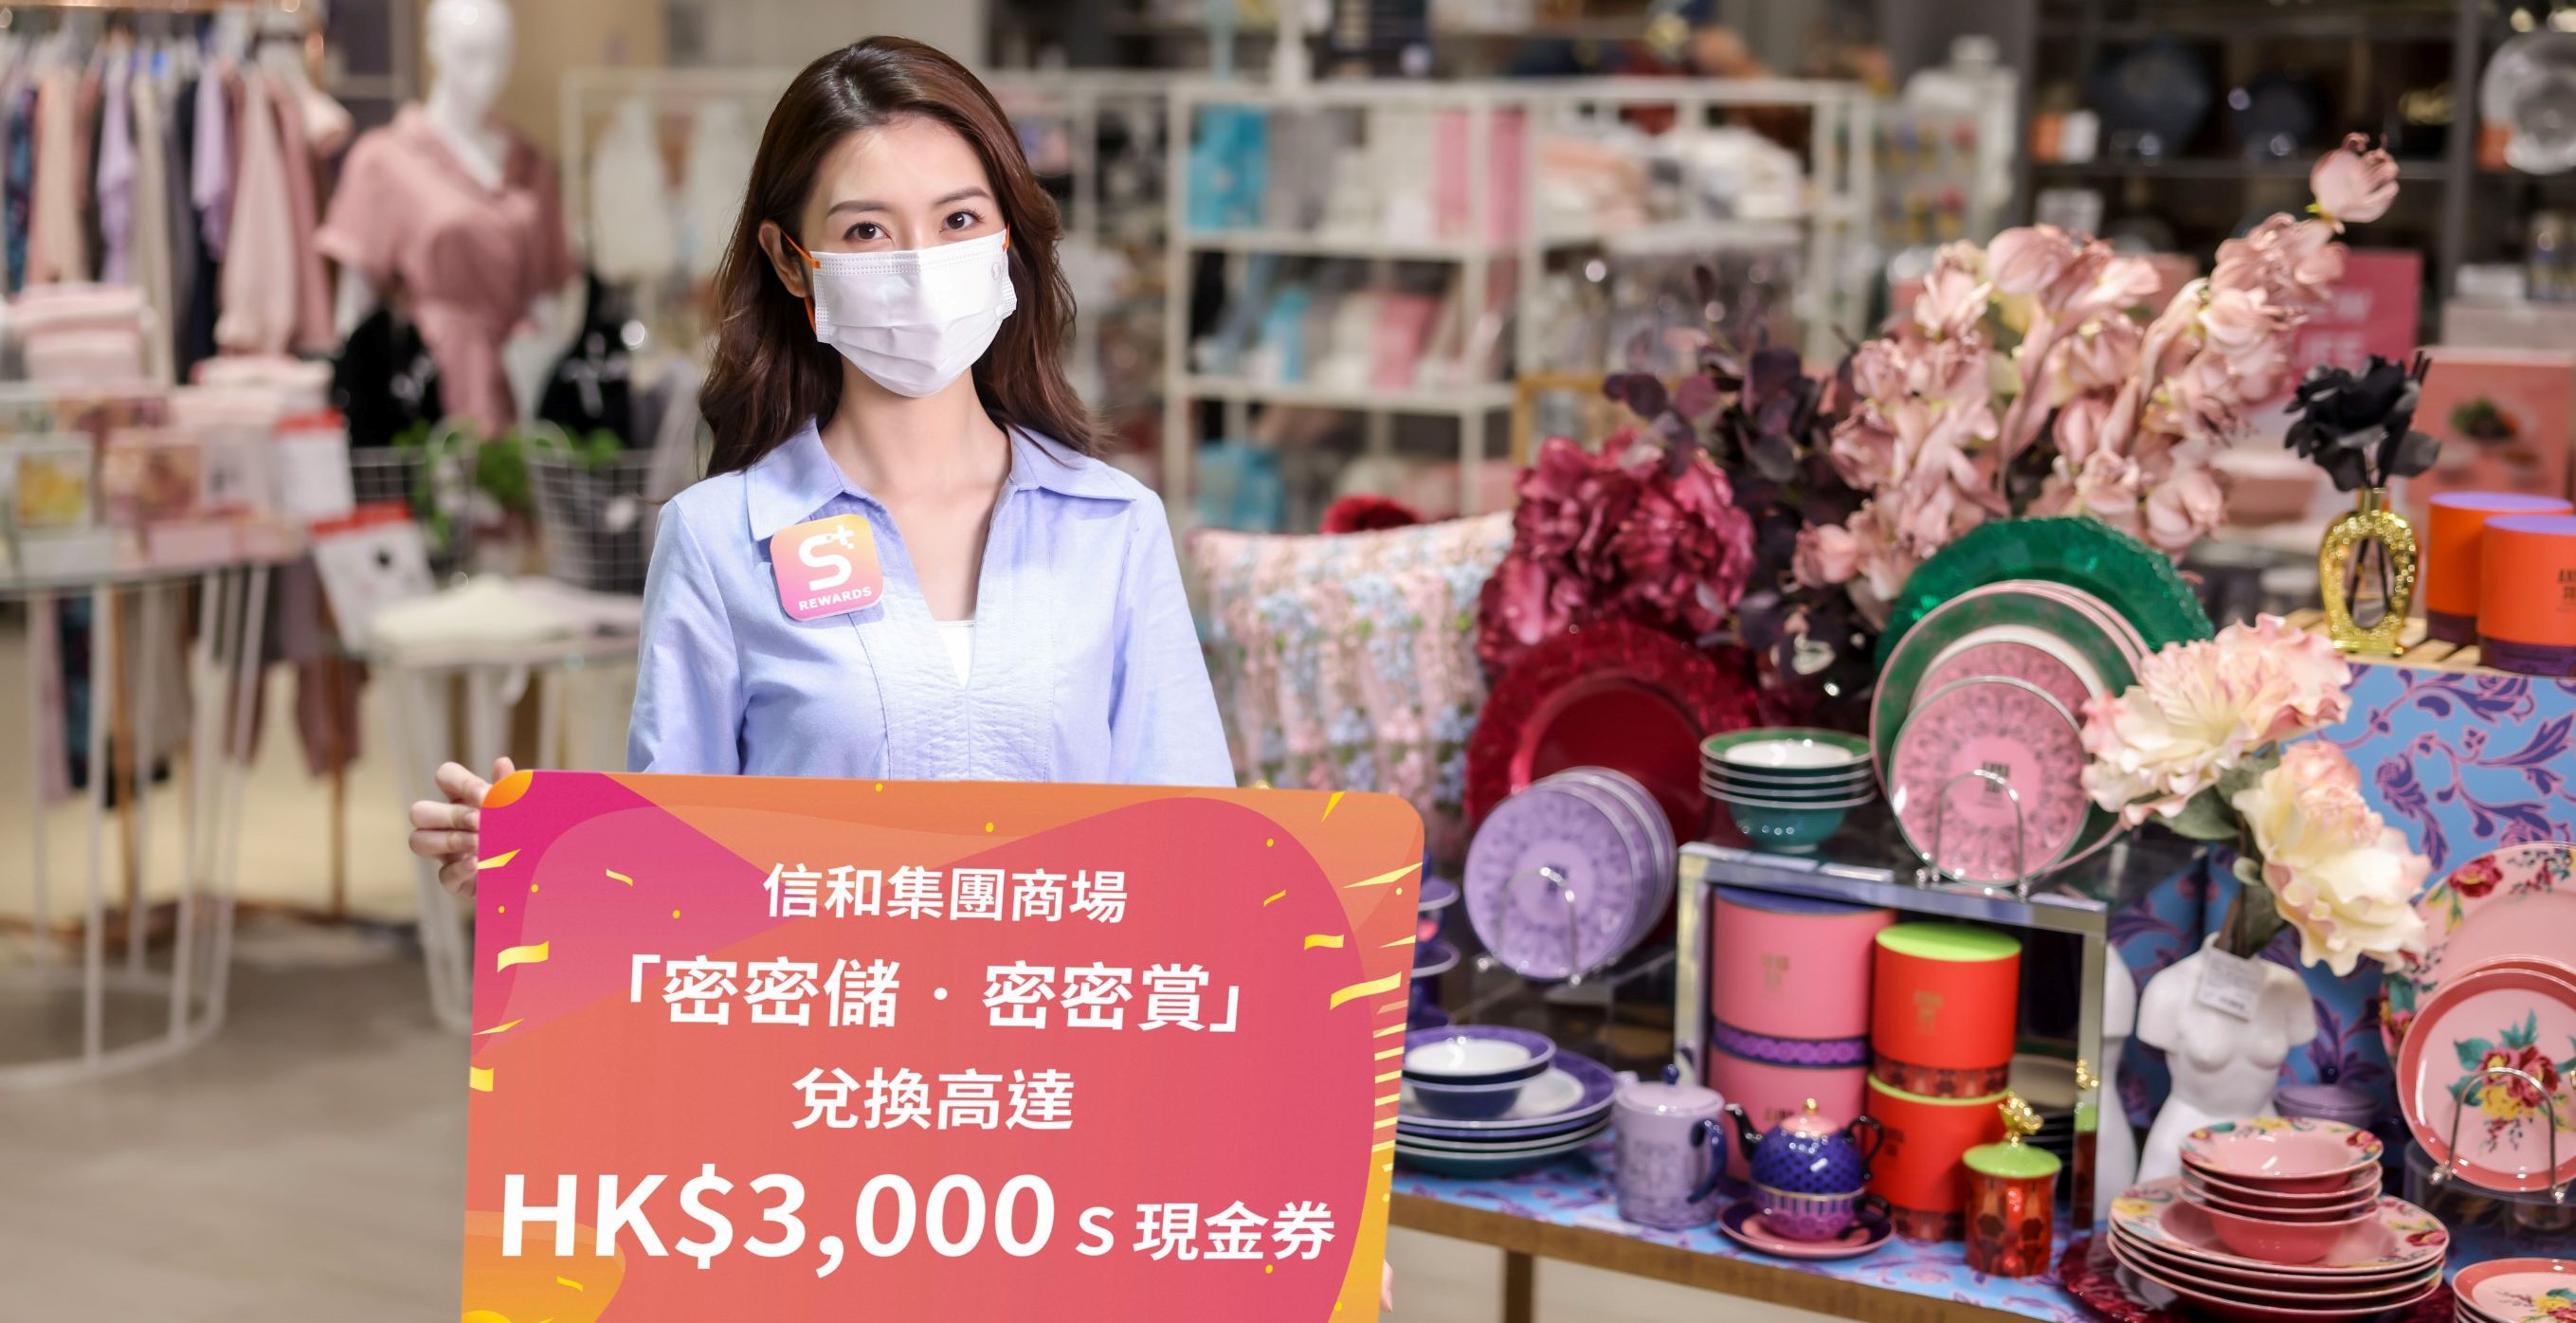 【優惠】商場推出電子印章獎賞 兌換最高HK$3000現金券